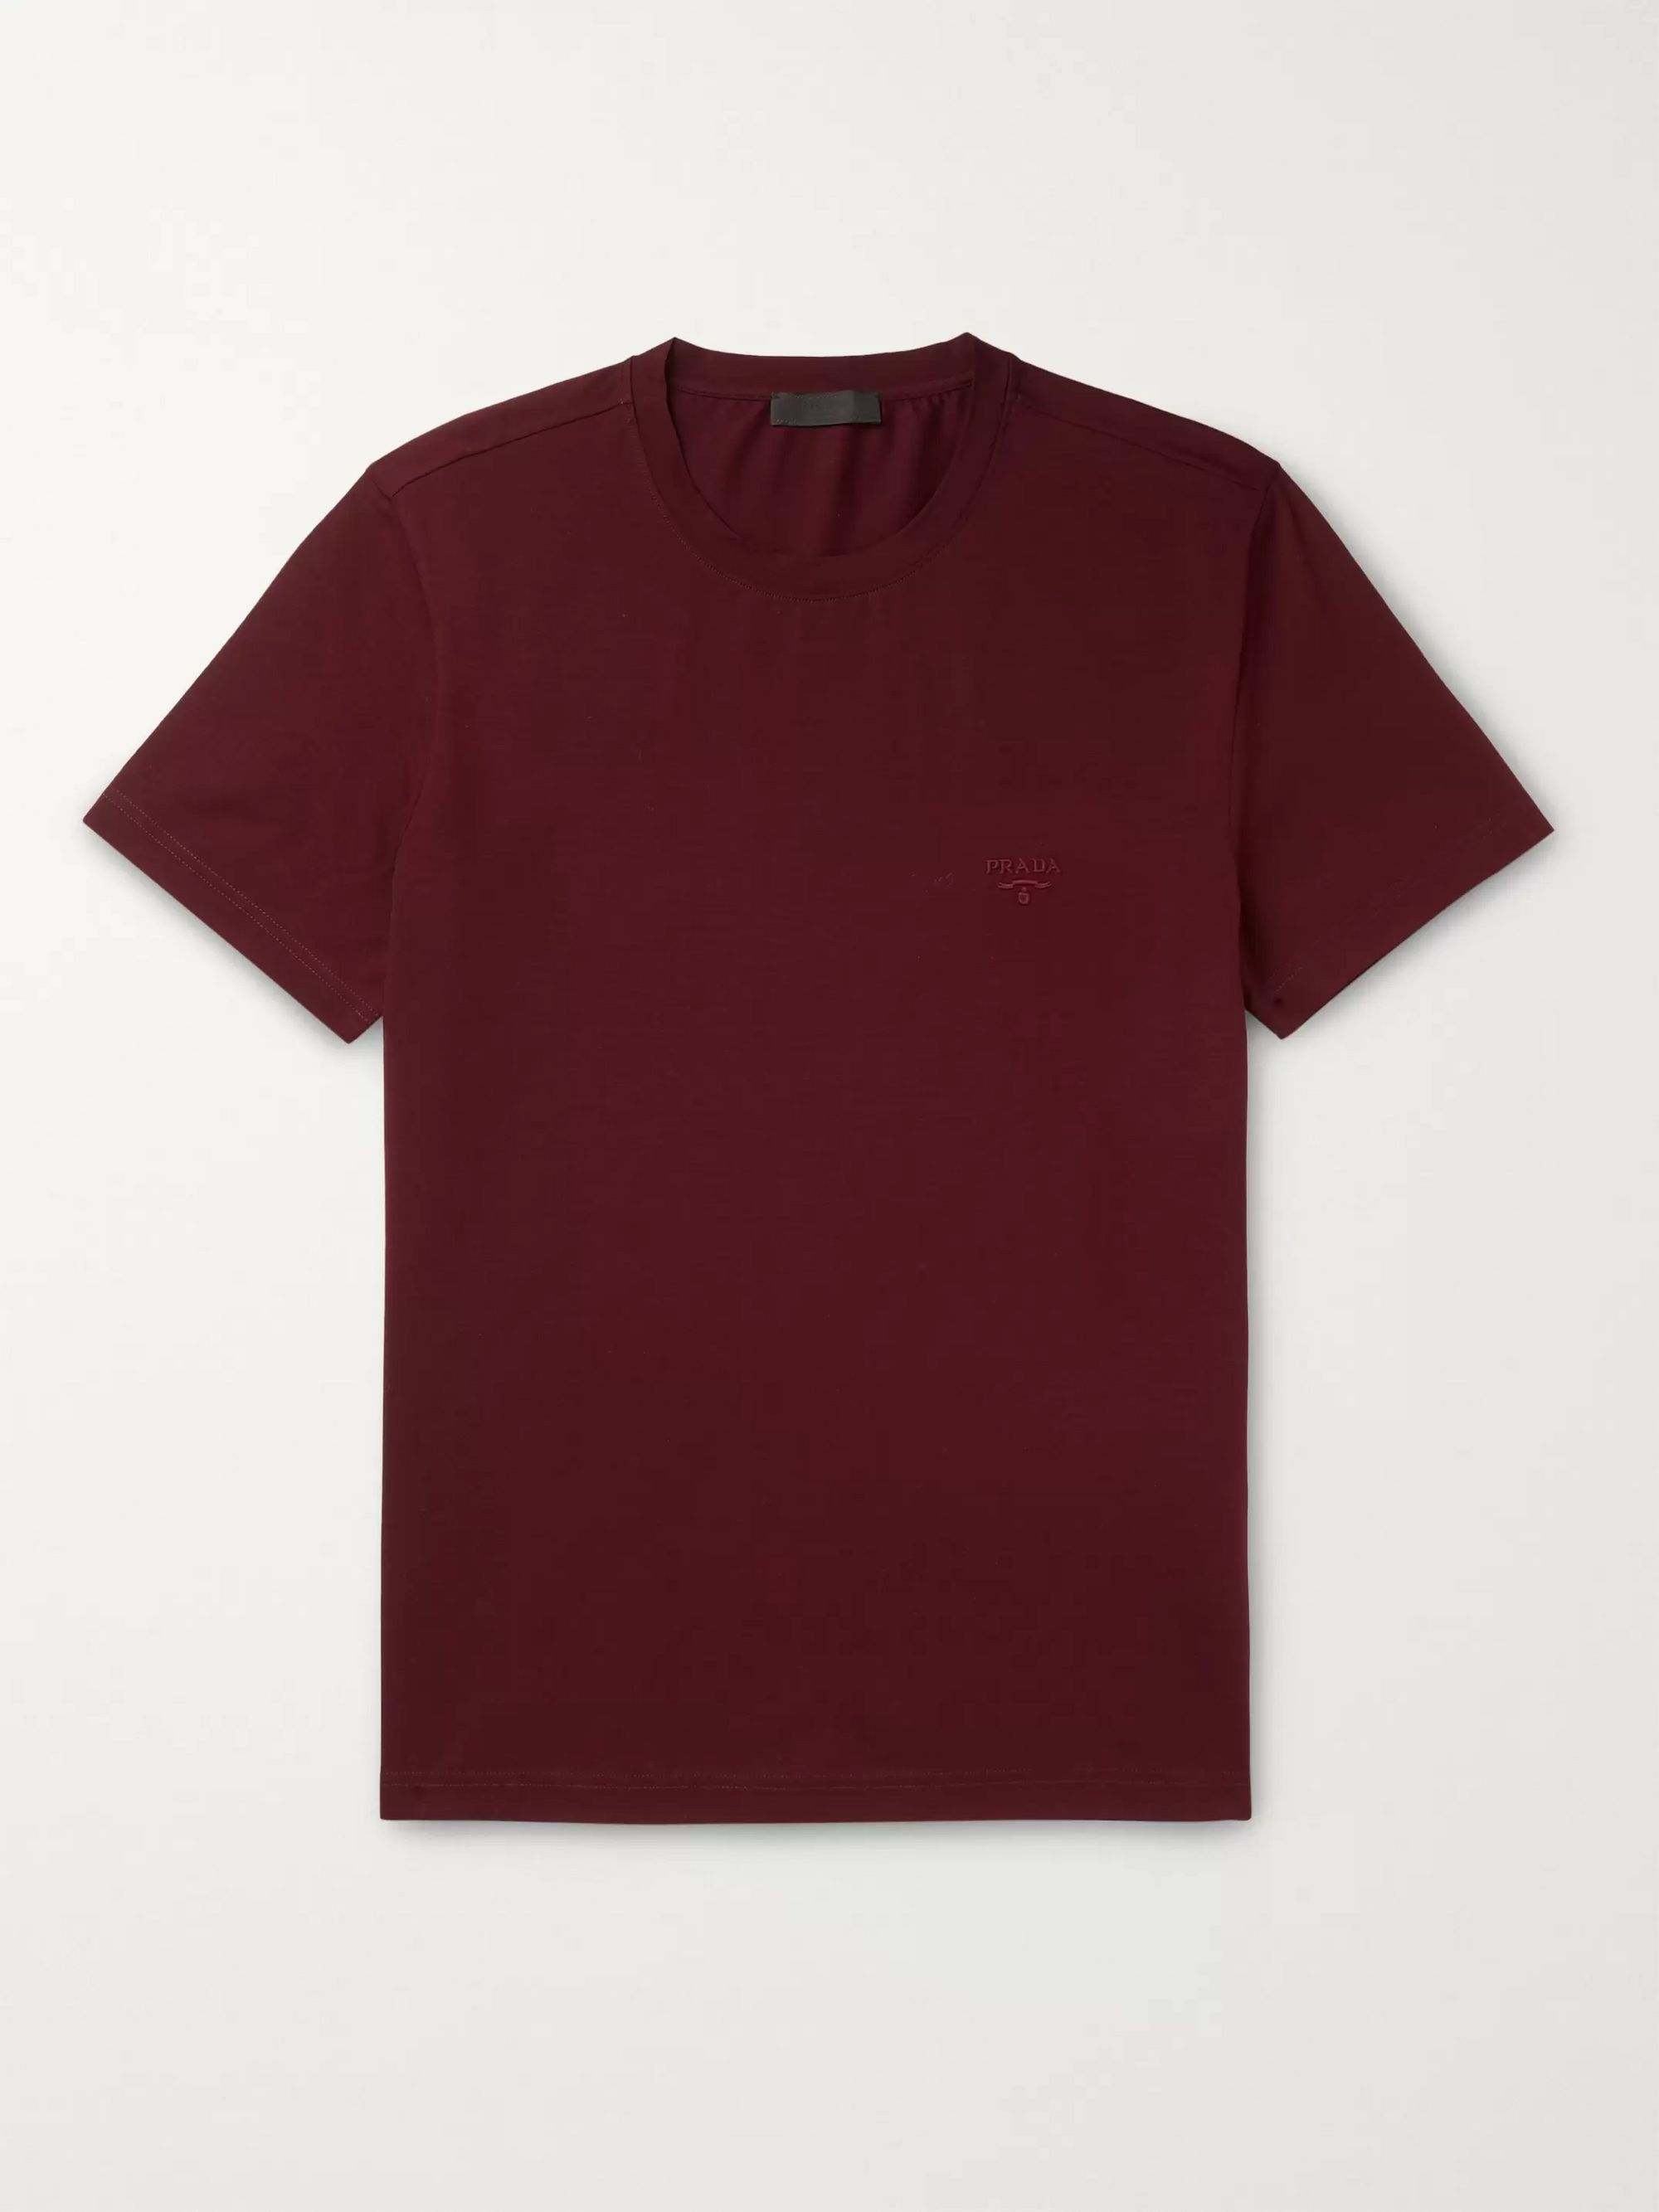 Prada Plain T Shirt Cheap Sale, 52% OFF | lagence.tv